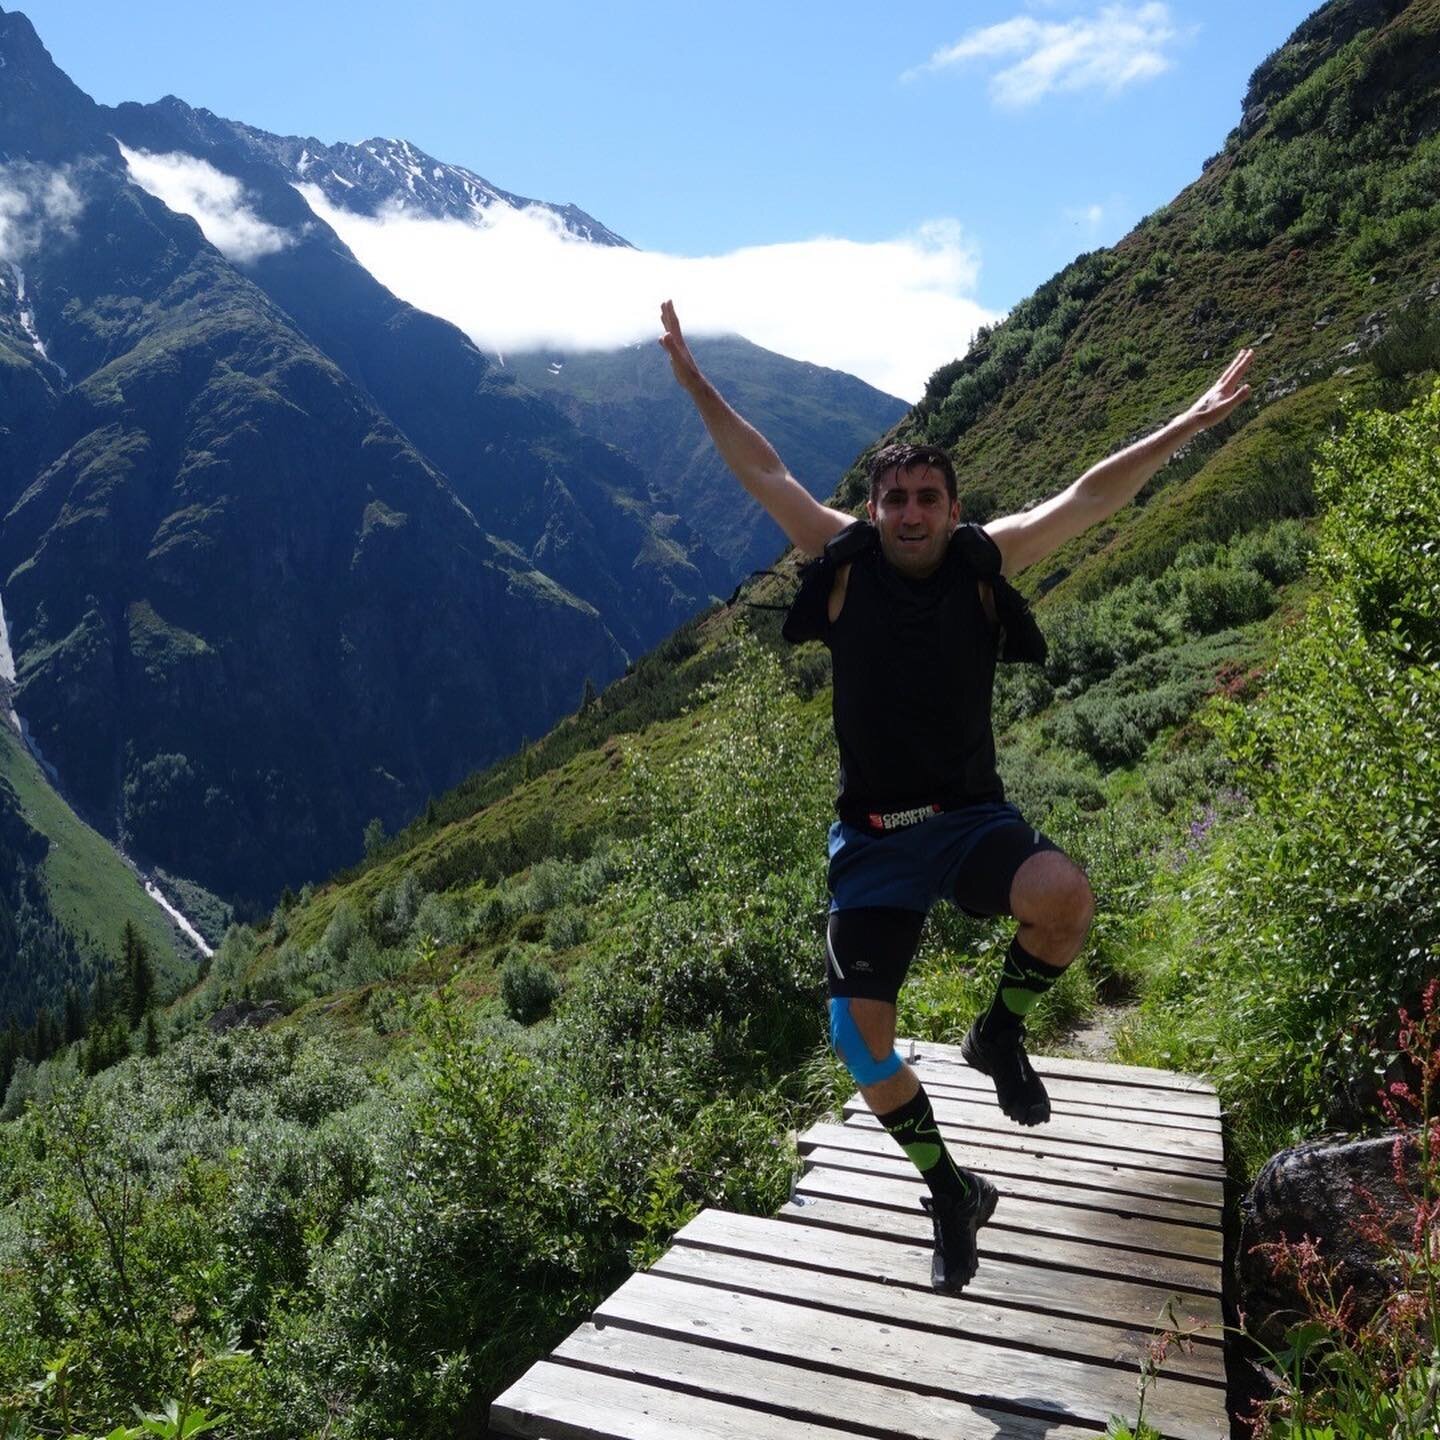 Wir freuen uns auf das Trailrunning Camp vom 2. bis 4. Juli 2021 im Pitztal/Tirol. Sei auch du dabei auf den Trails und geniesse ein tolles Laufweekend. 

ℹ️ https://marmotatrailrunning.ch
🏃🏼3 Tagestouren
🗓 Rahmenprogramm
🏨 Vier Jahreszeiten @vie